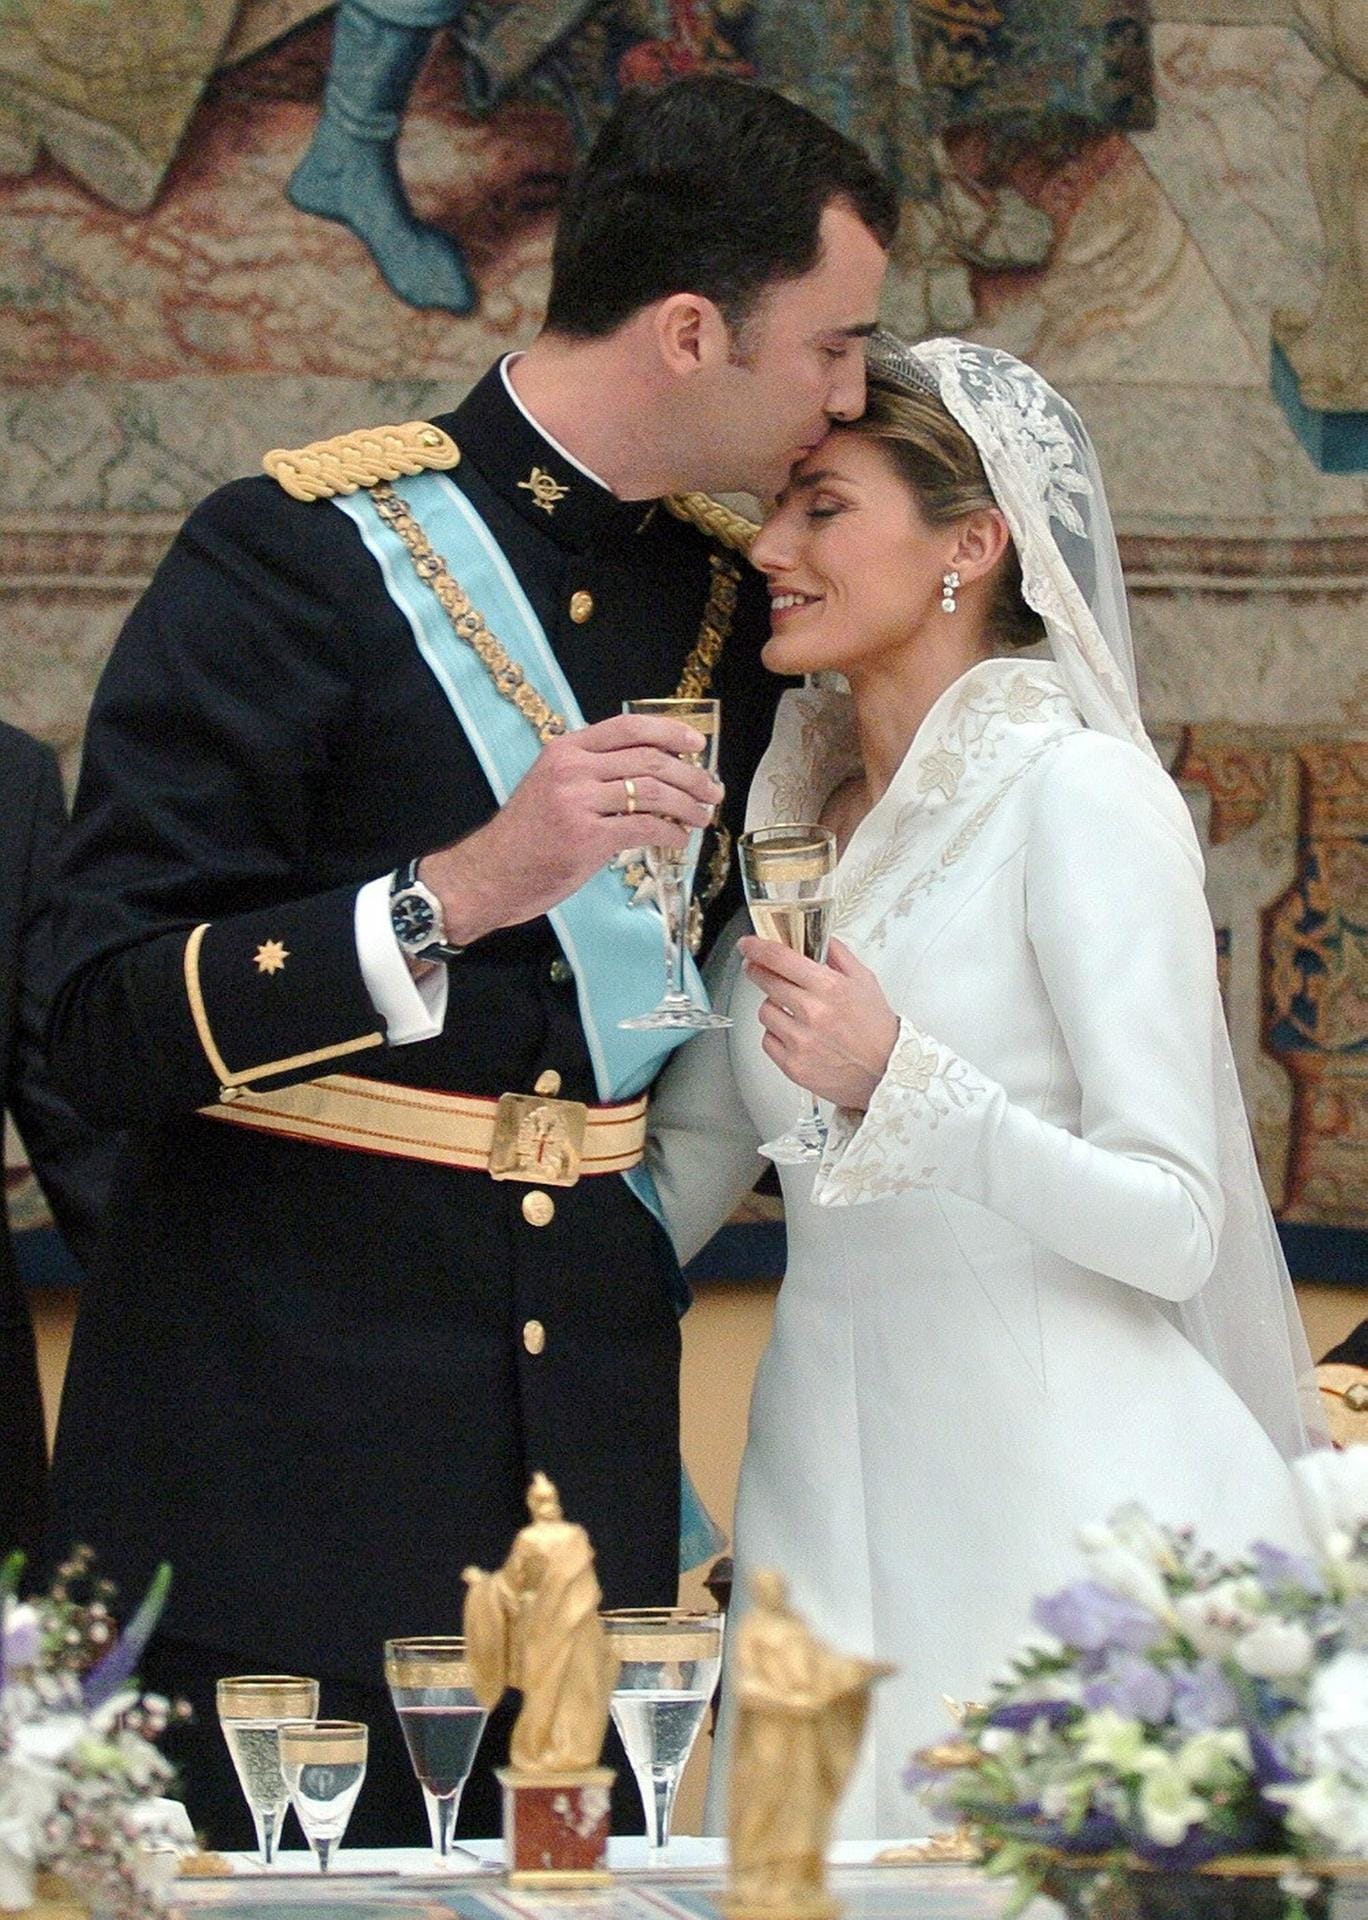 Im gleichen Jahr gaben sich auch Felipe von Spanien und seine große Liebe Letizia das Jawort. Die zierliche Ex-Journalistin war bei der Trauung sichtlich nervös - dabei gab sie in ihrem schmal geschnittenen Kleid mit Stehkragen wirklich eine ganz bezaubernde Braut ab.